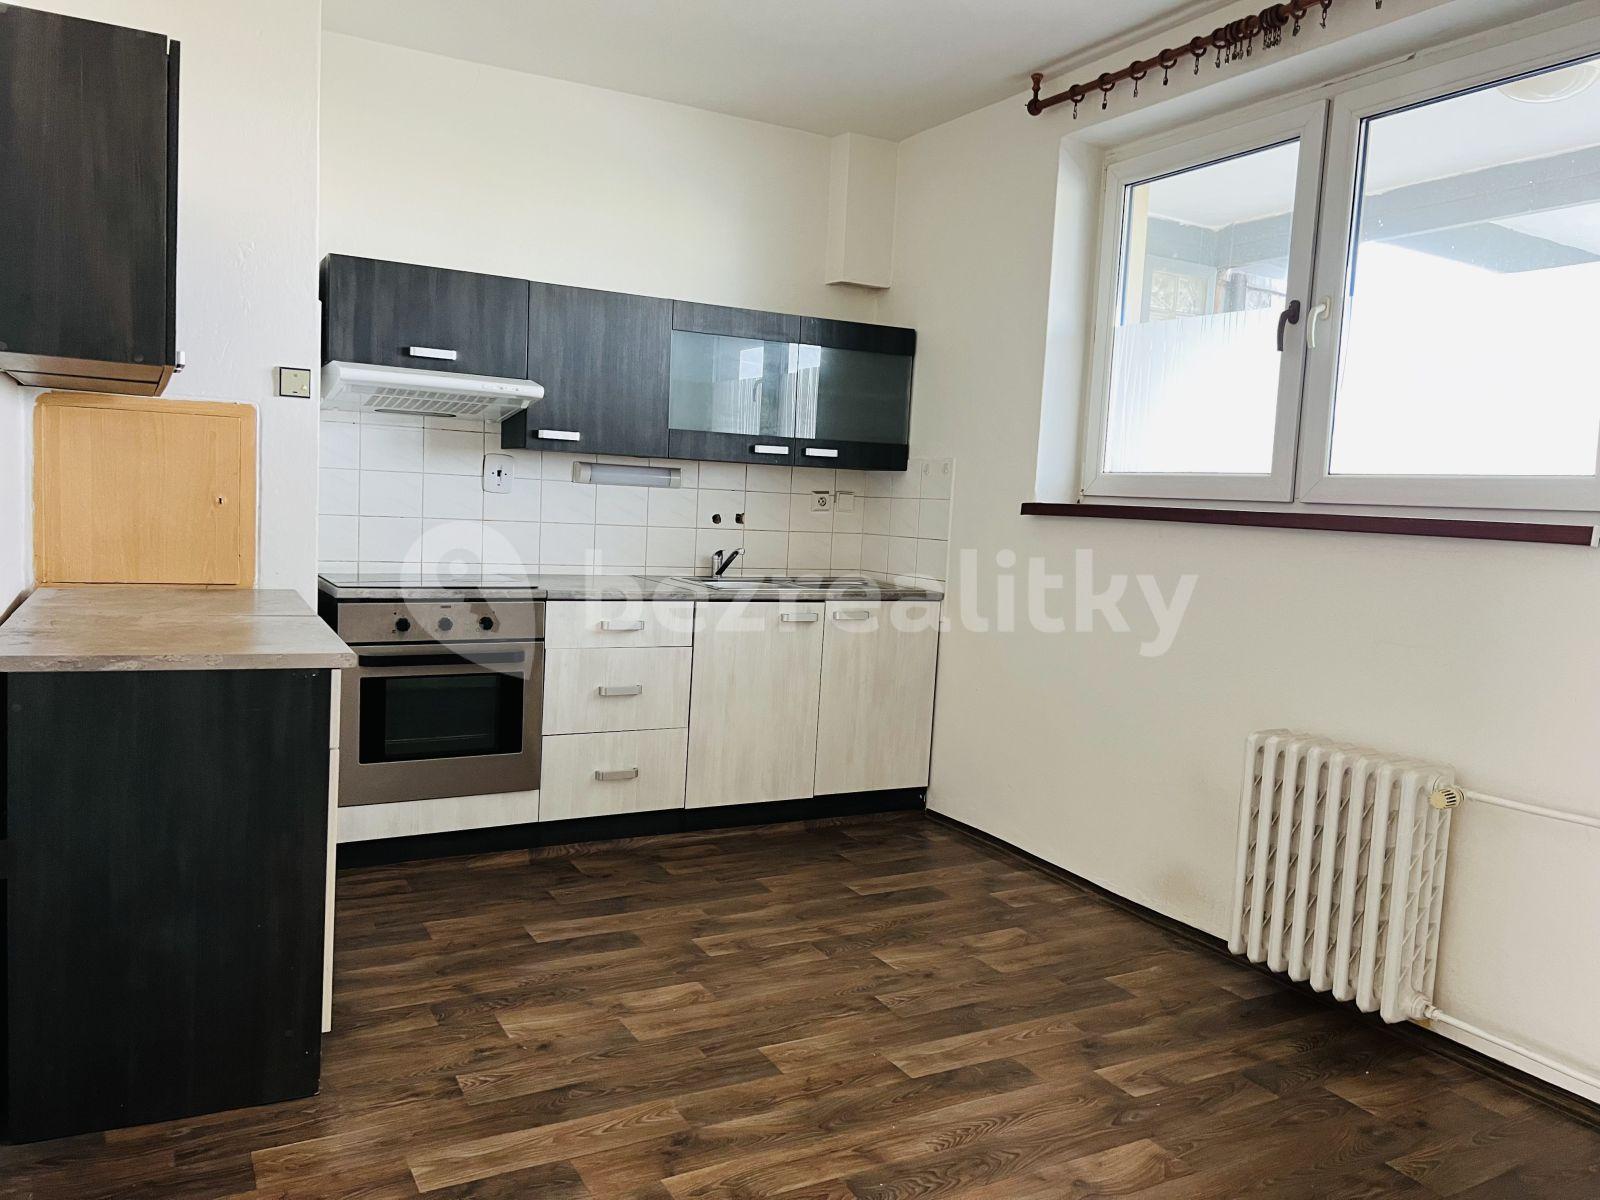 2 bedroom flat to rent, 64 m², Horní, Ostrava, Moravskoslezský Region